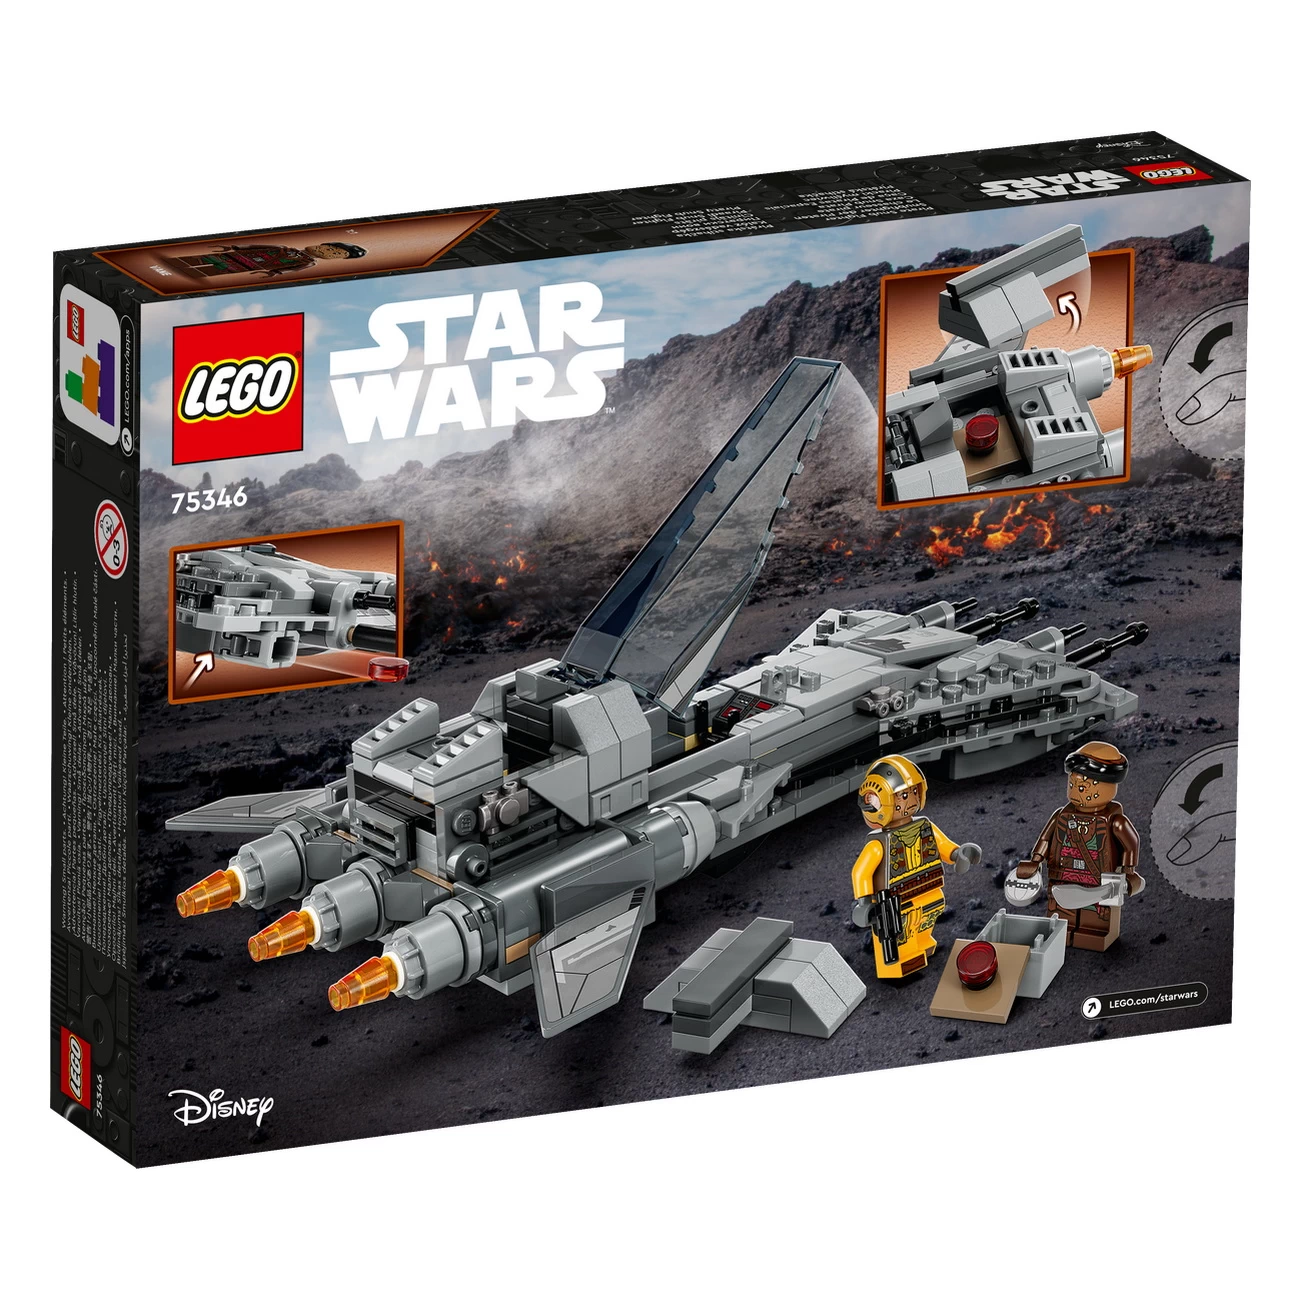 LEGO Star Wars 75346 - Snubfighter der Piraten